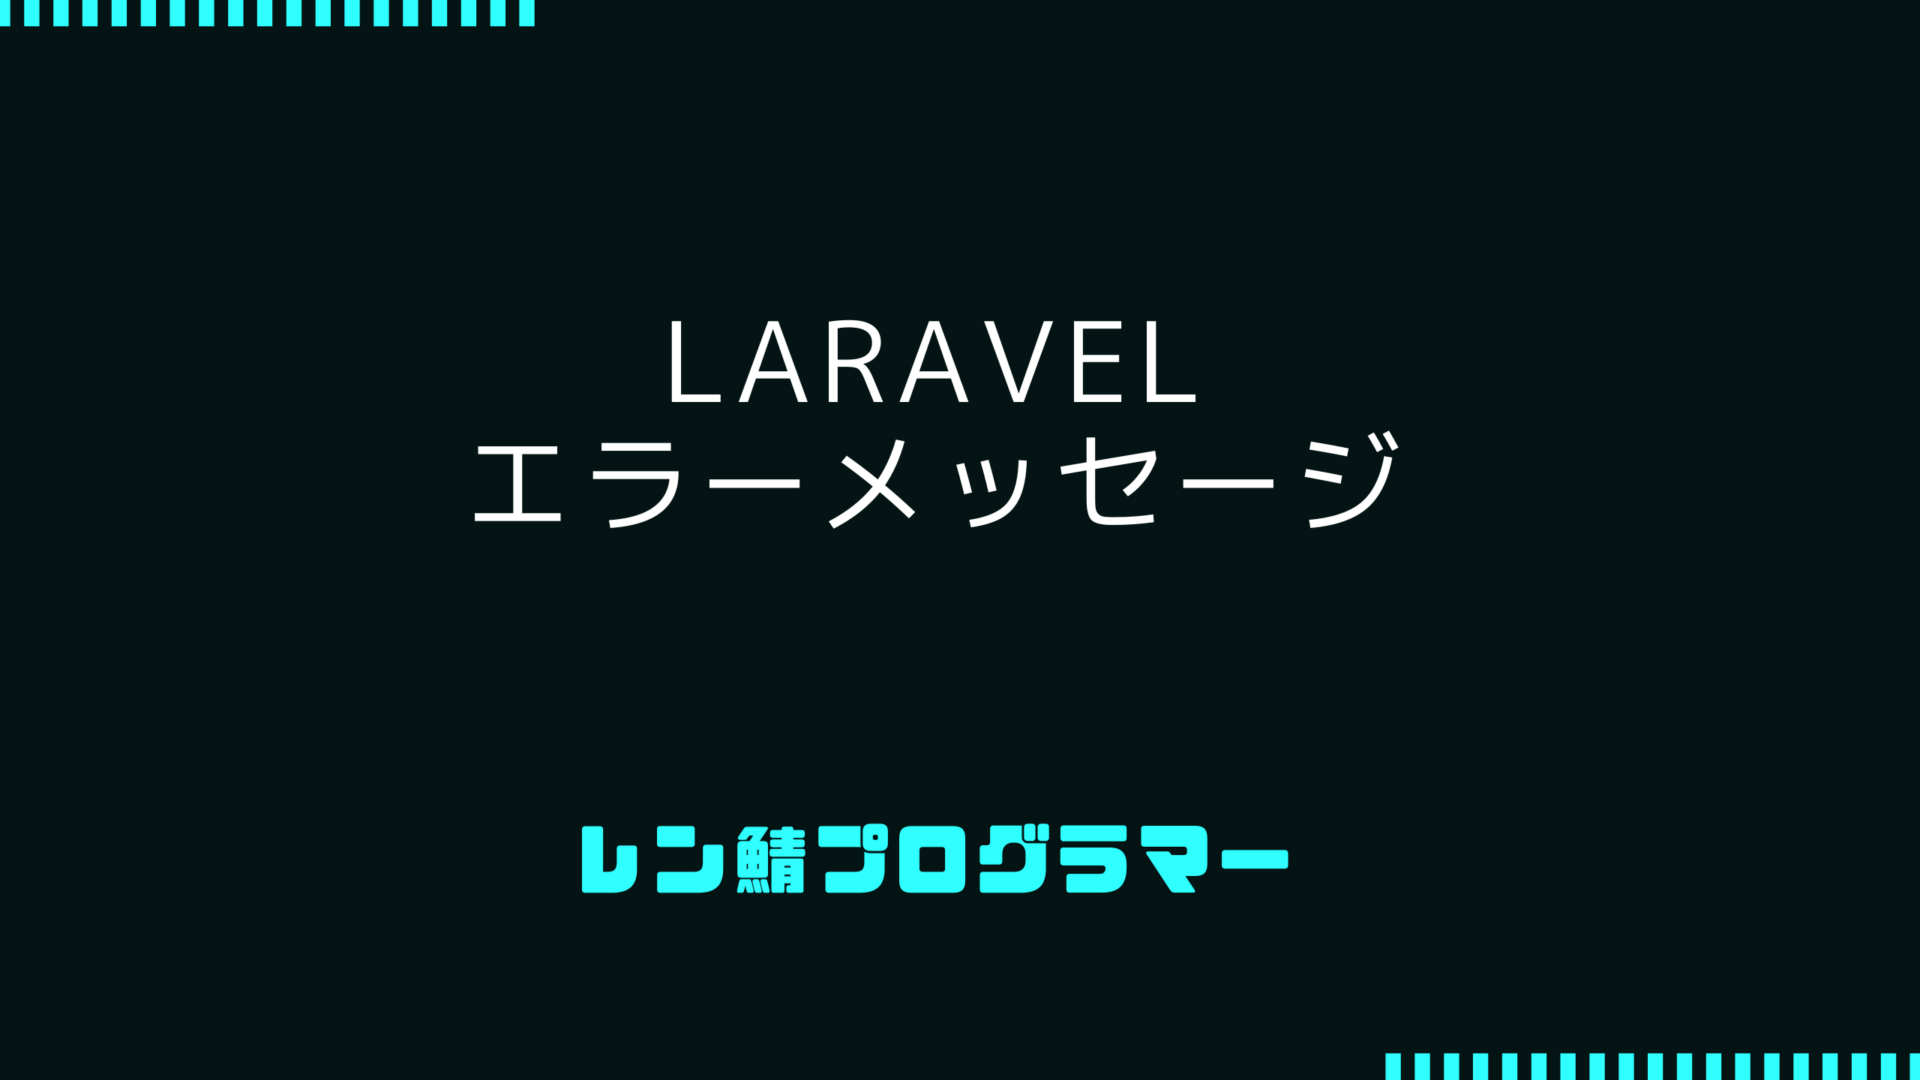 Laravelで遭遇する一般的なエラーメッセージとその対処法を詳解！